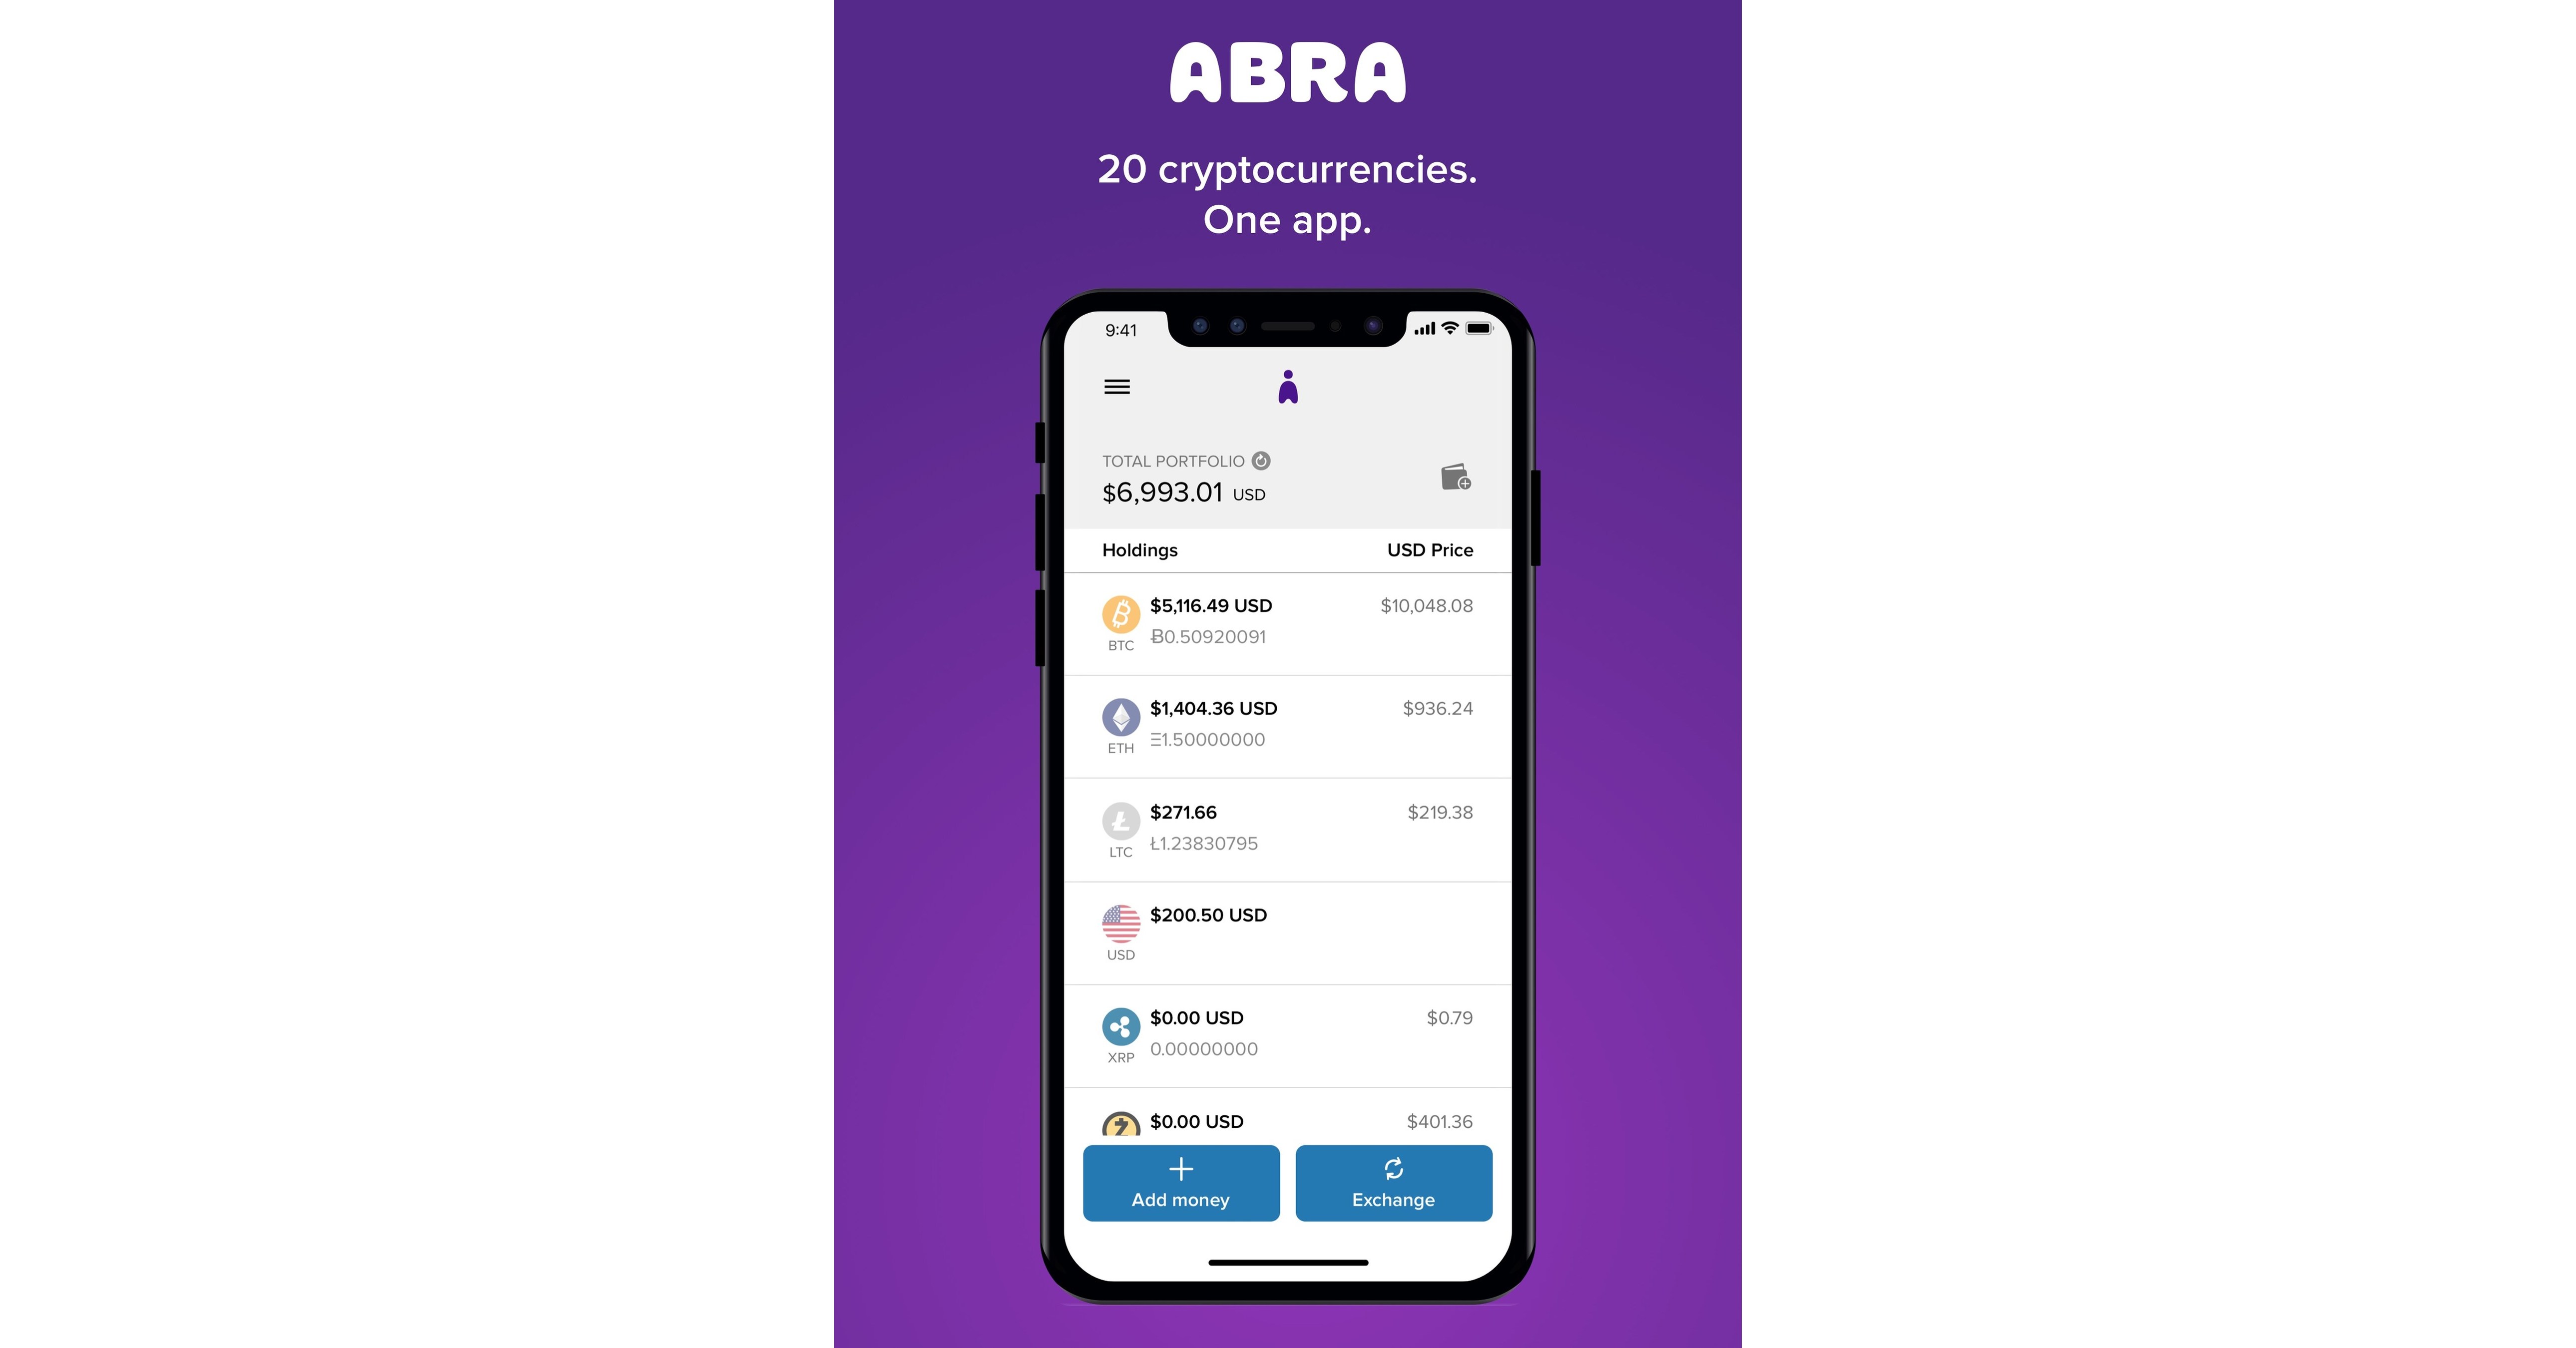 abra mobile bitcoin wallet app